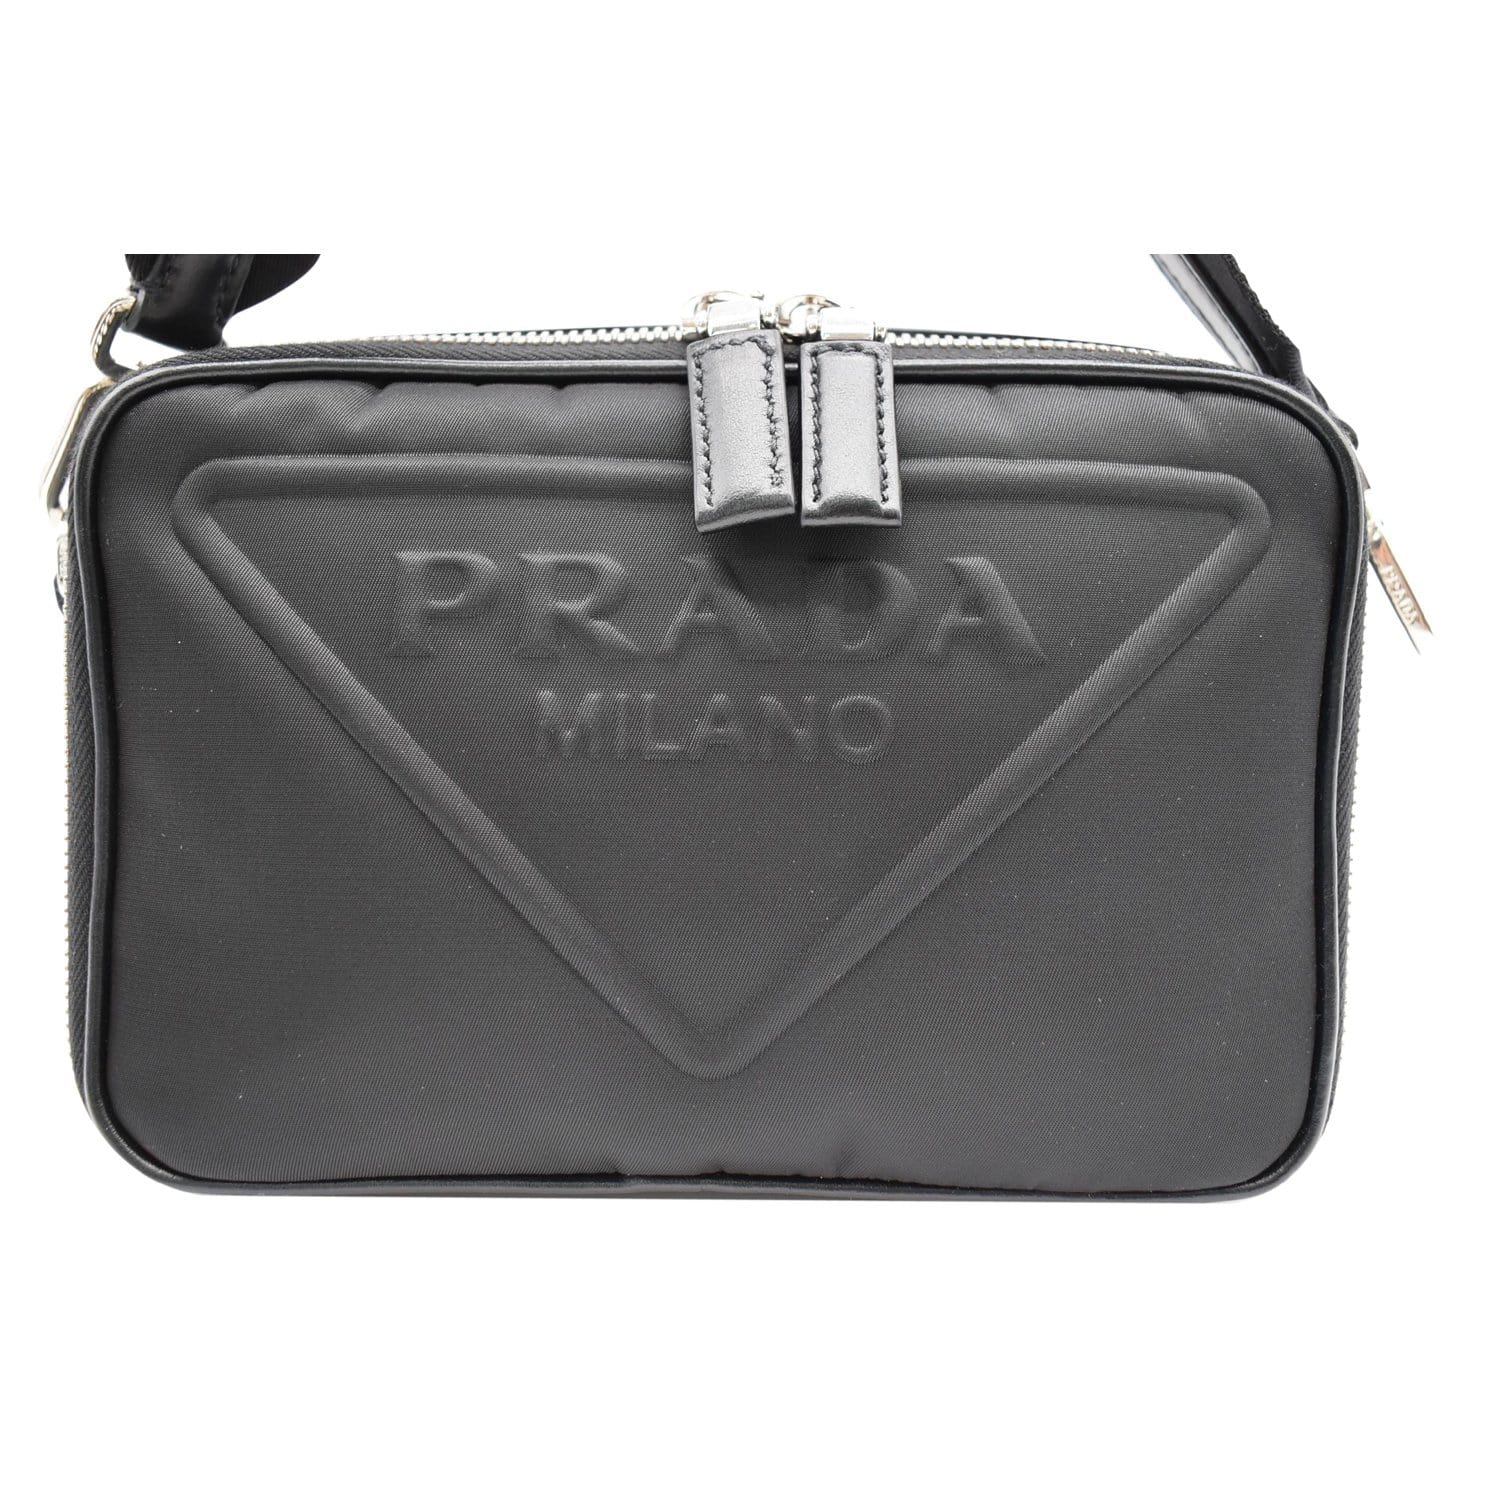 Prada Re-nylon Camera Bag in Black